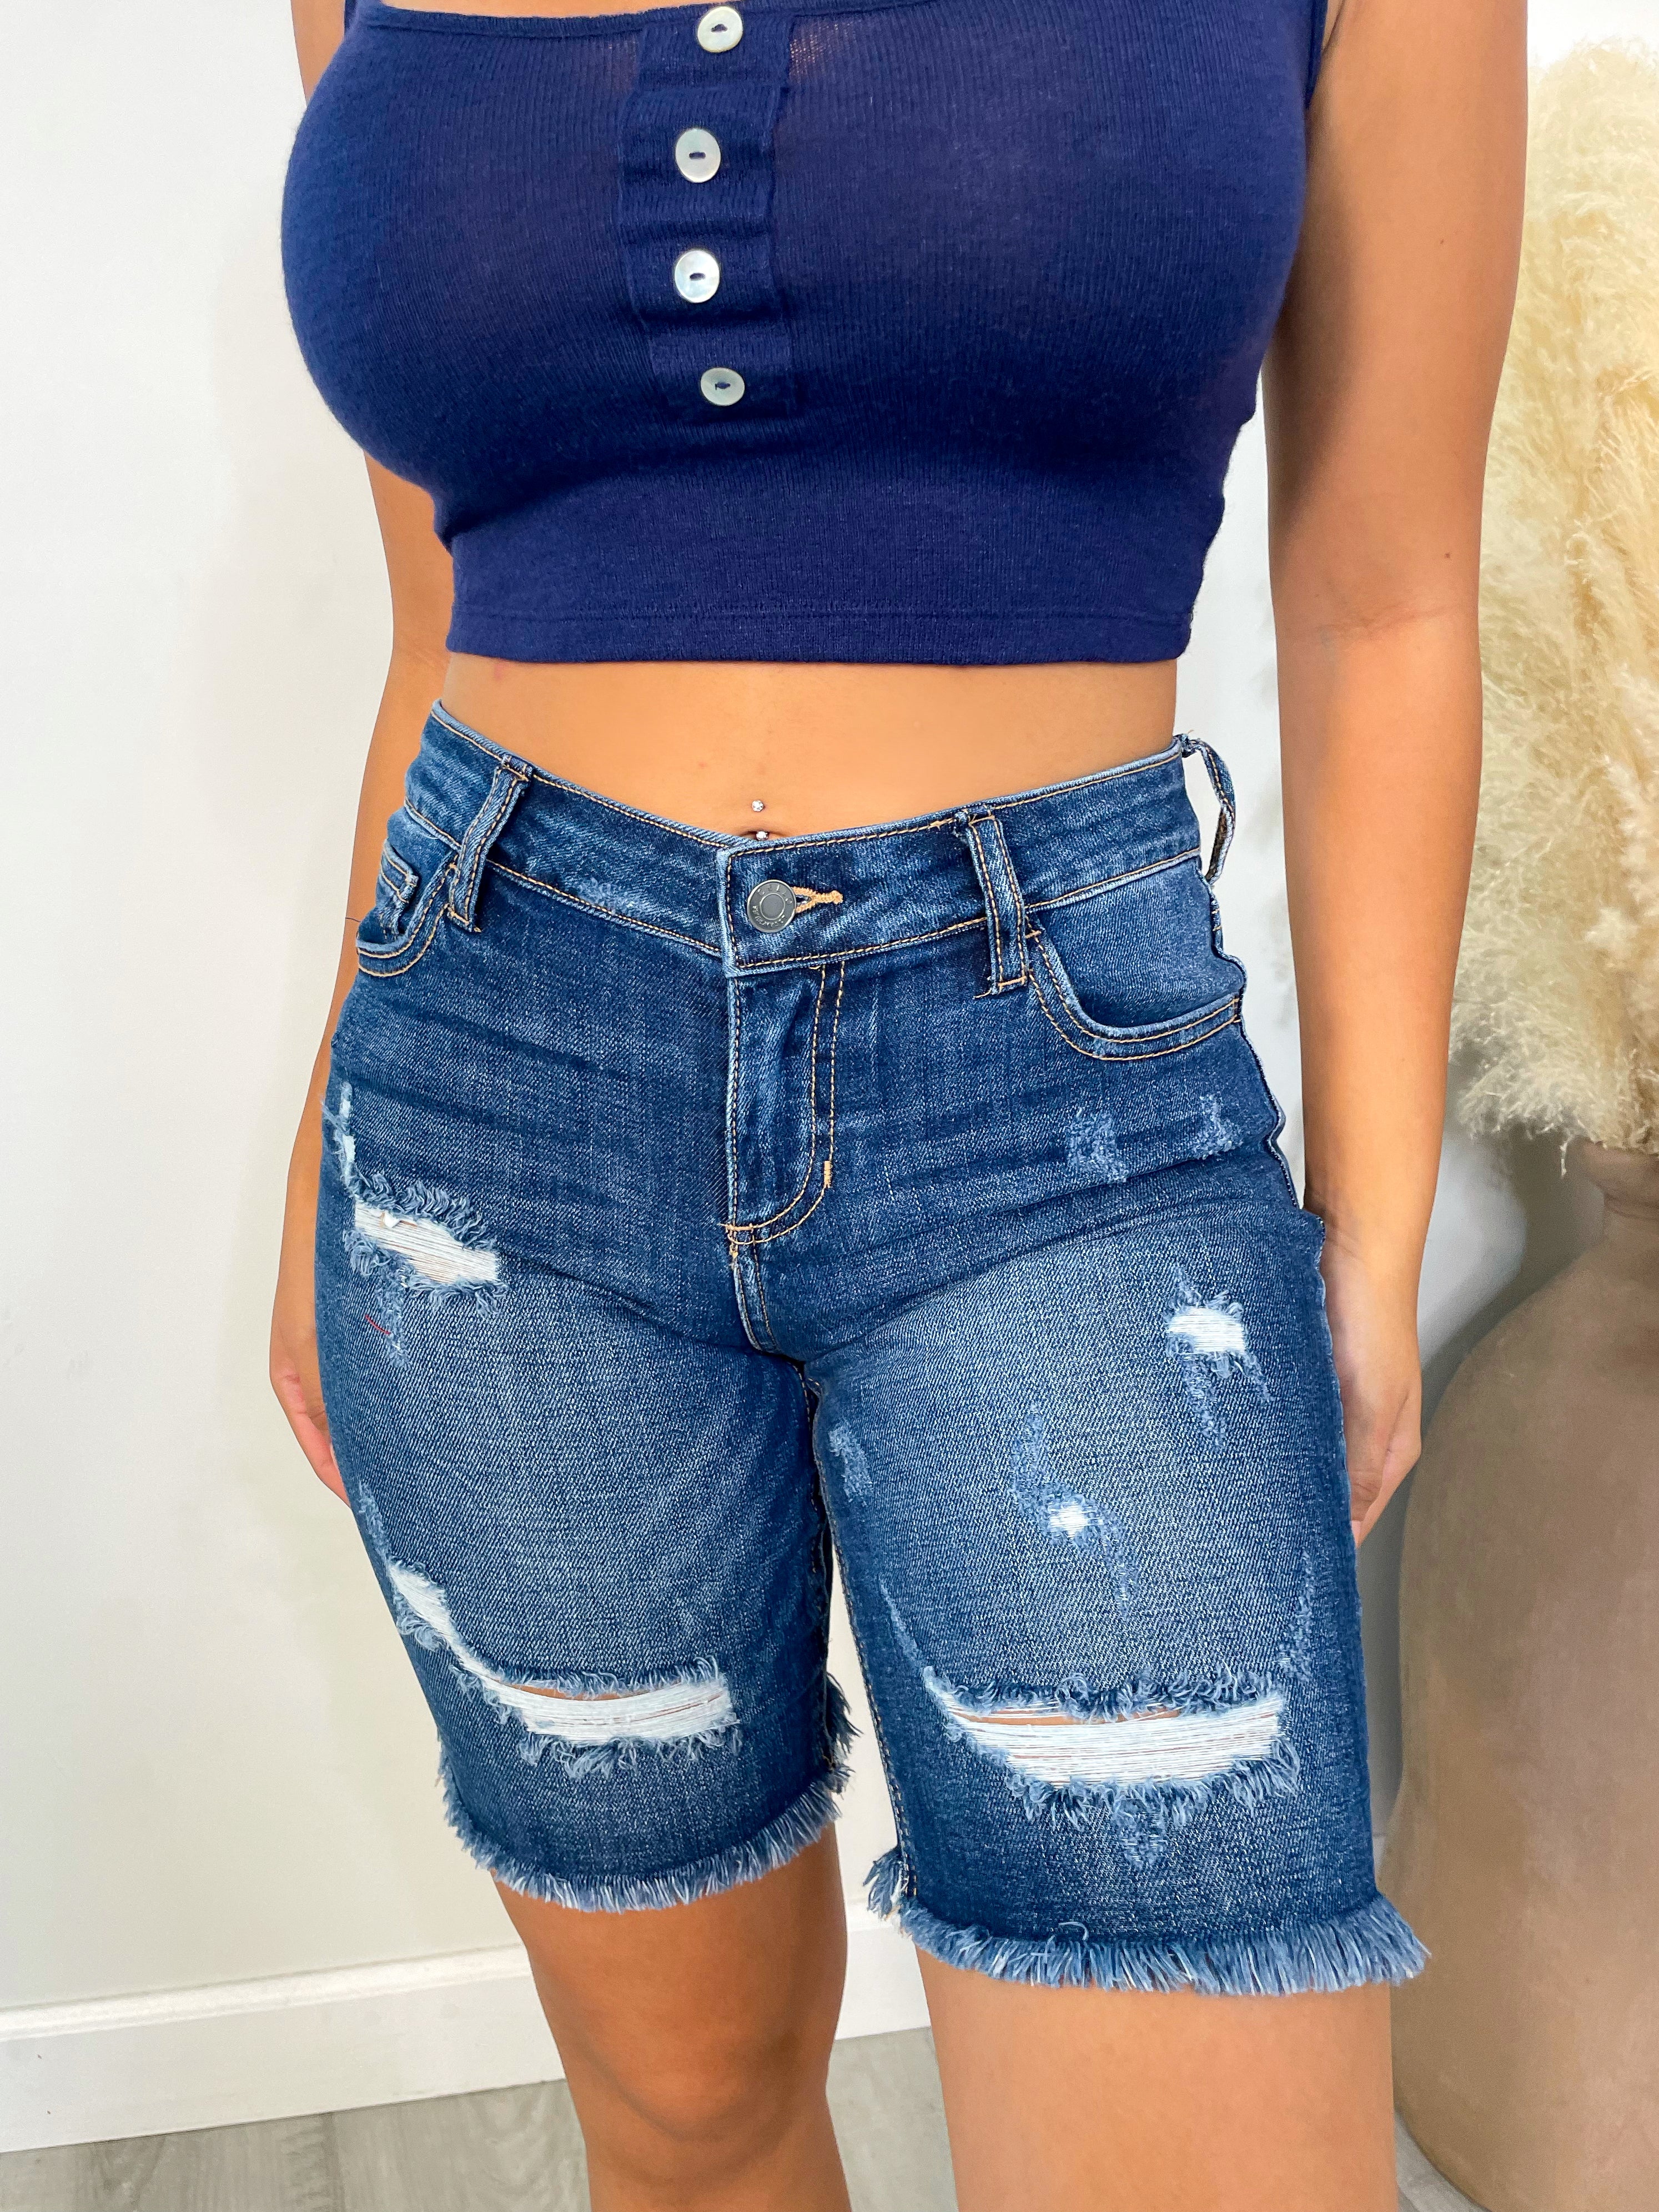 CHANEL Coco Denim Shorts Size 40 – JDEX Styles